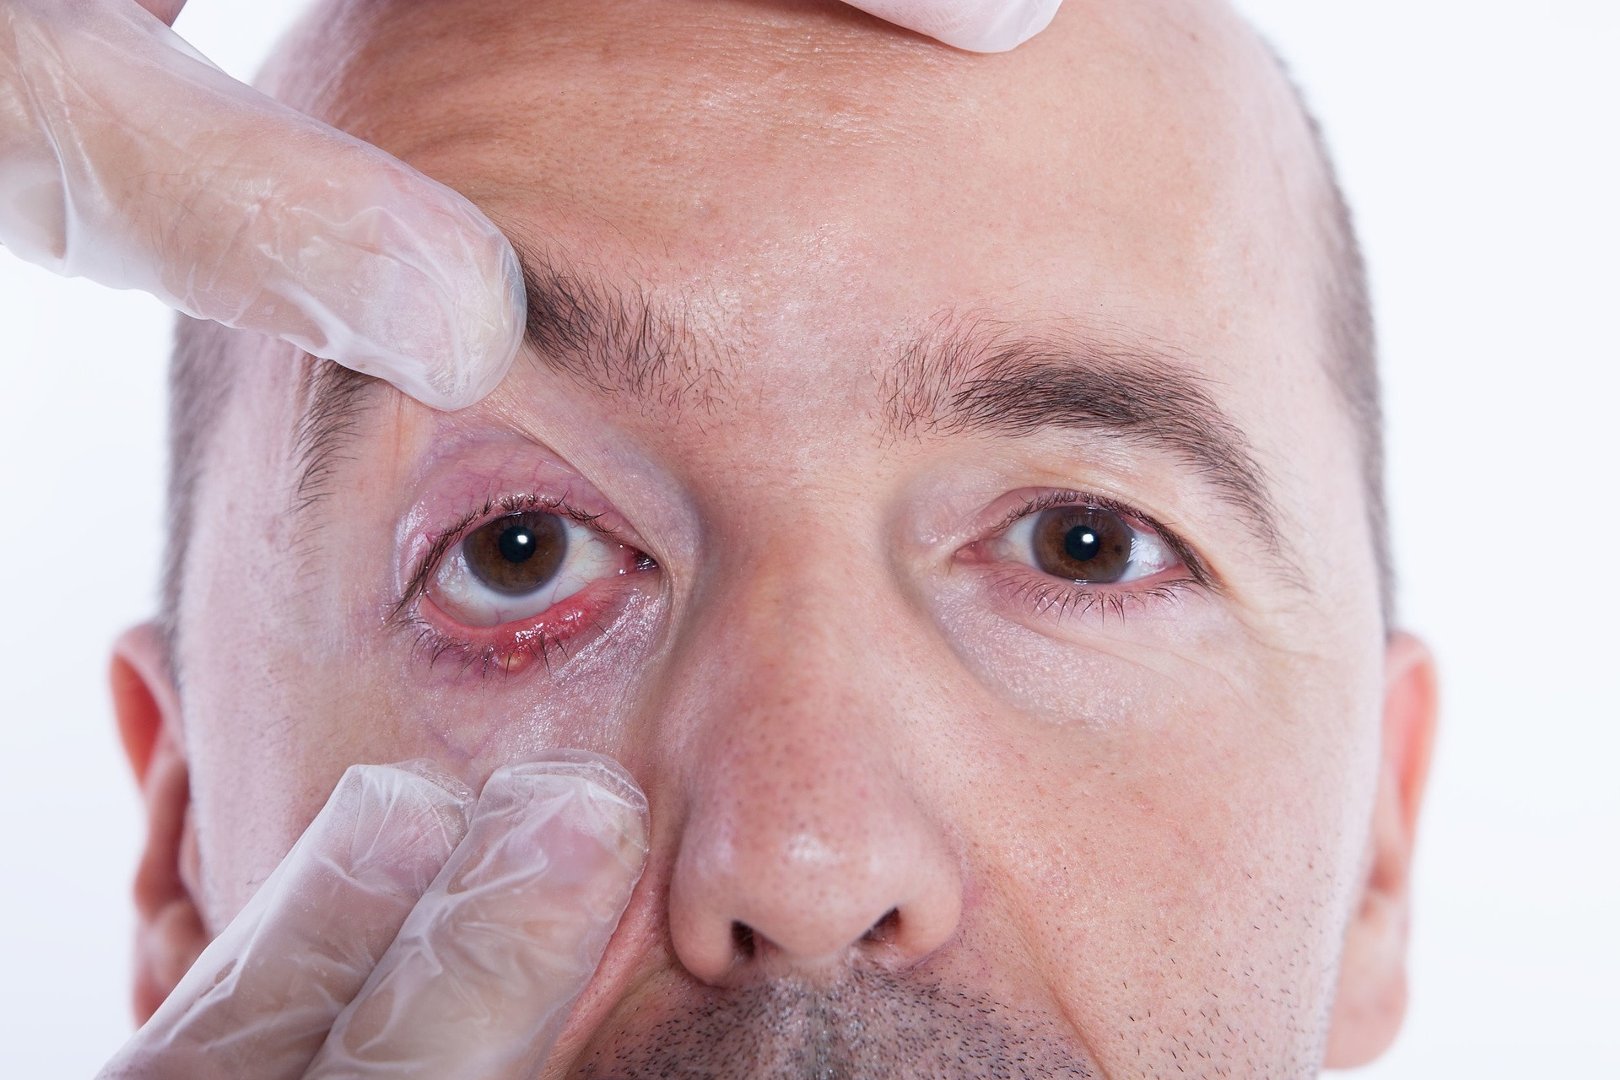 Jak leczyć jęczmień na oku? Od czego robi się jęczmień na powiece i jakie  powoduje objawy? Domowe sposoby na jęczmień | Strona Zdrowia